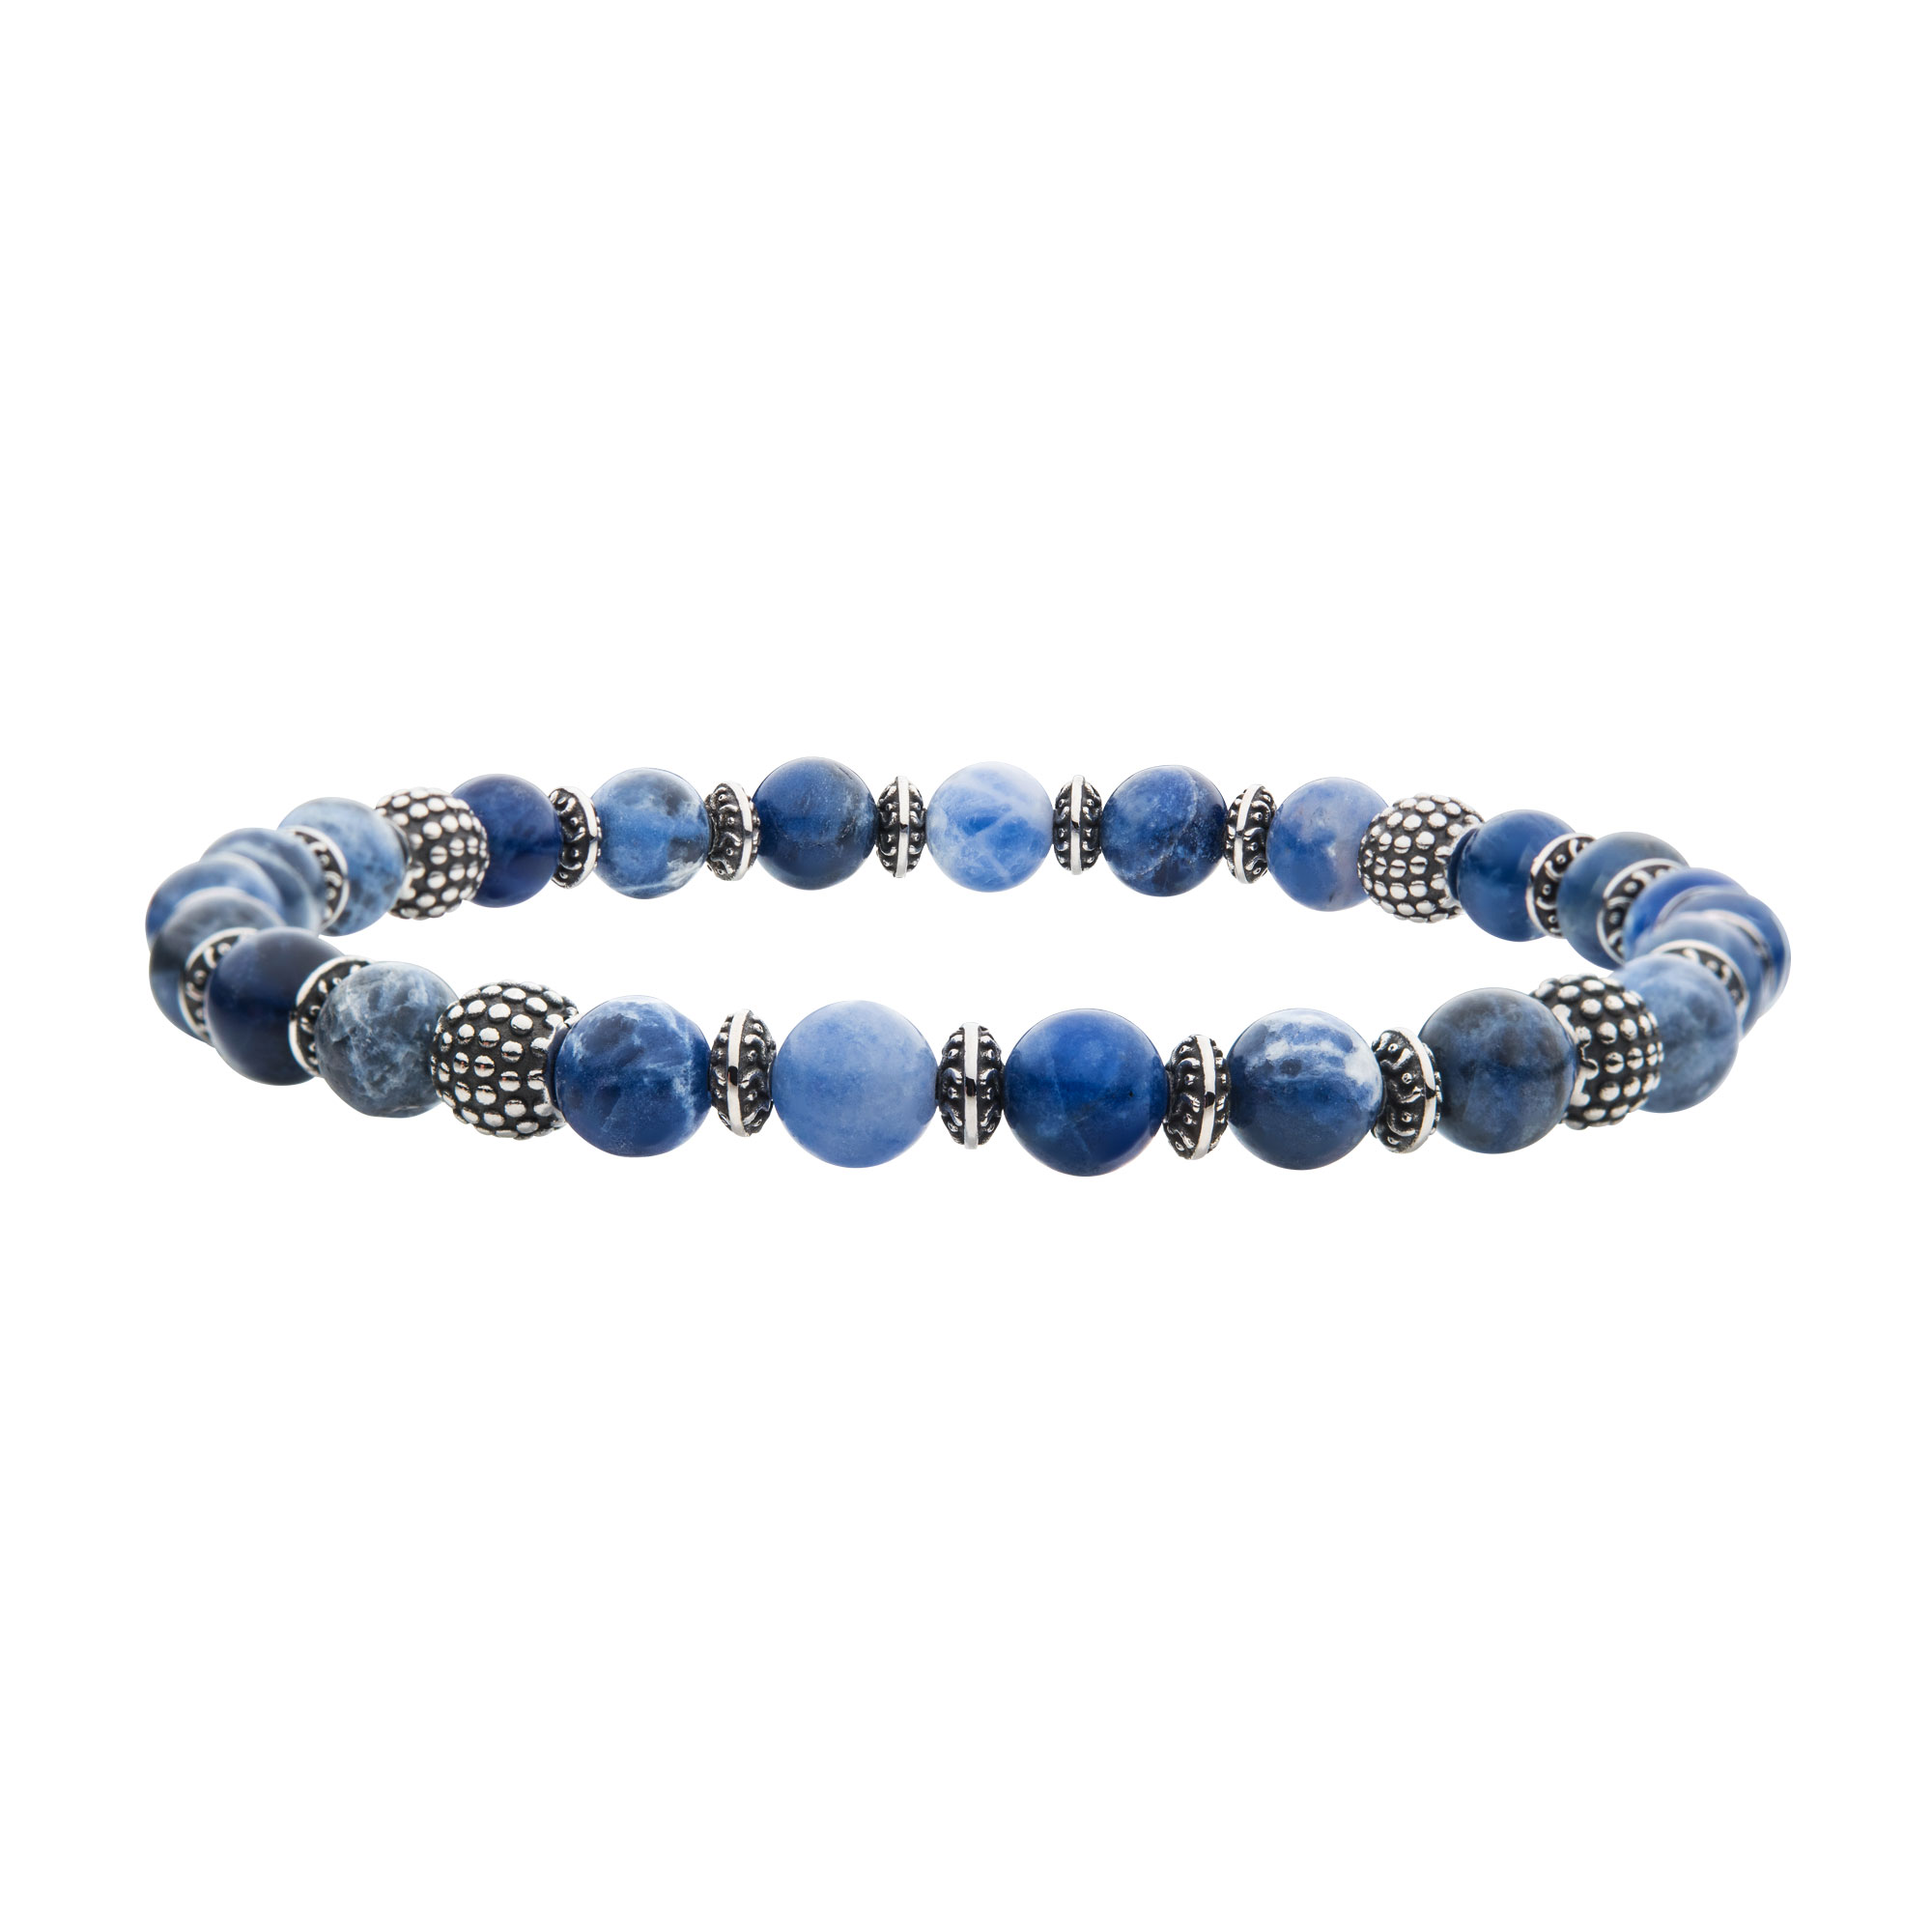 Blue Sodalite Stones with Black Oxidized Beads Bracelet P.K. Bennett Jewelers Mundelein, IL